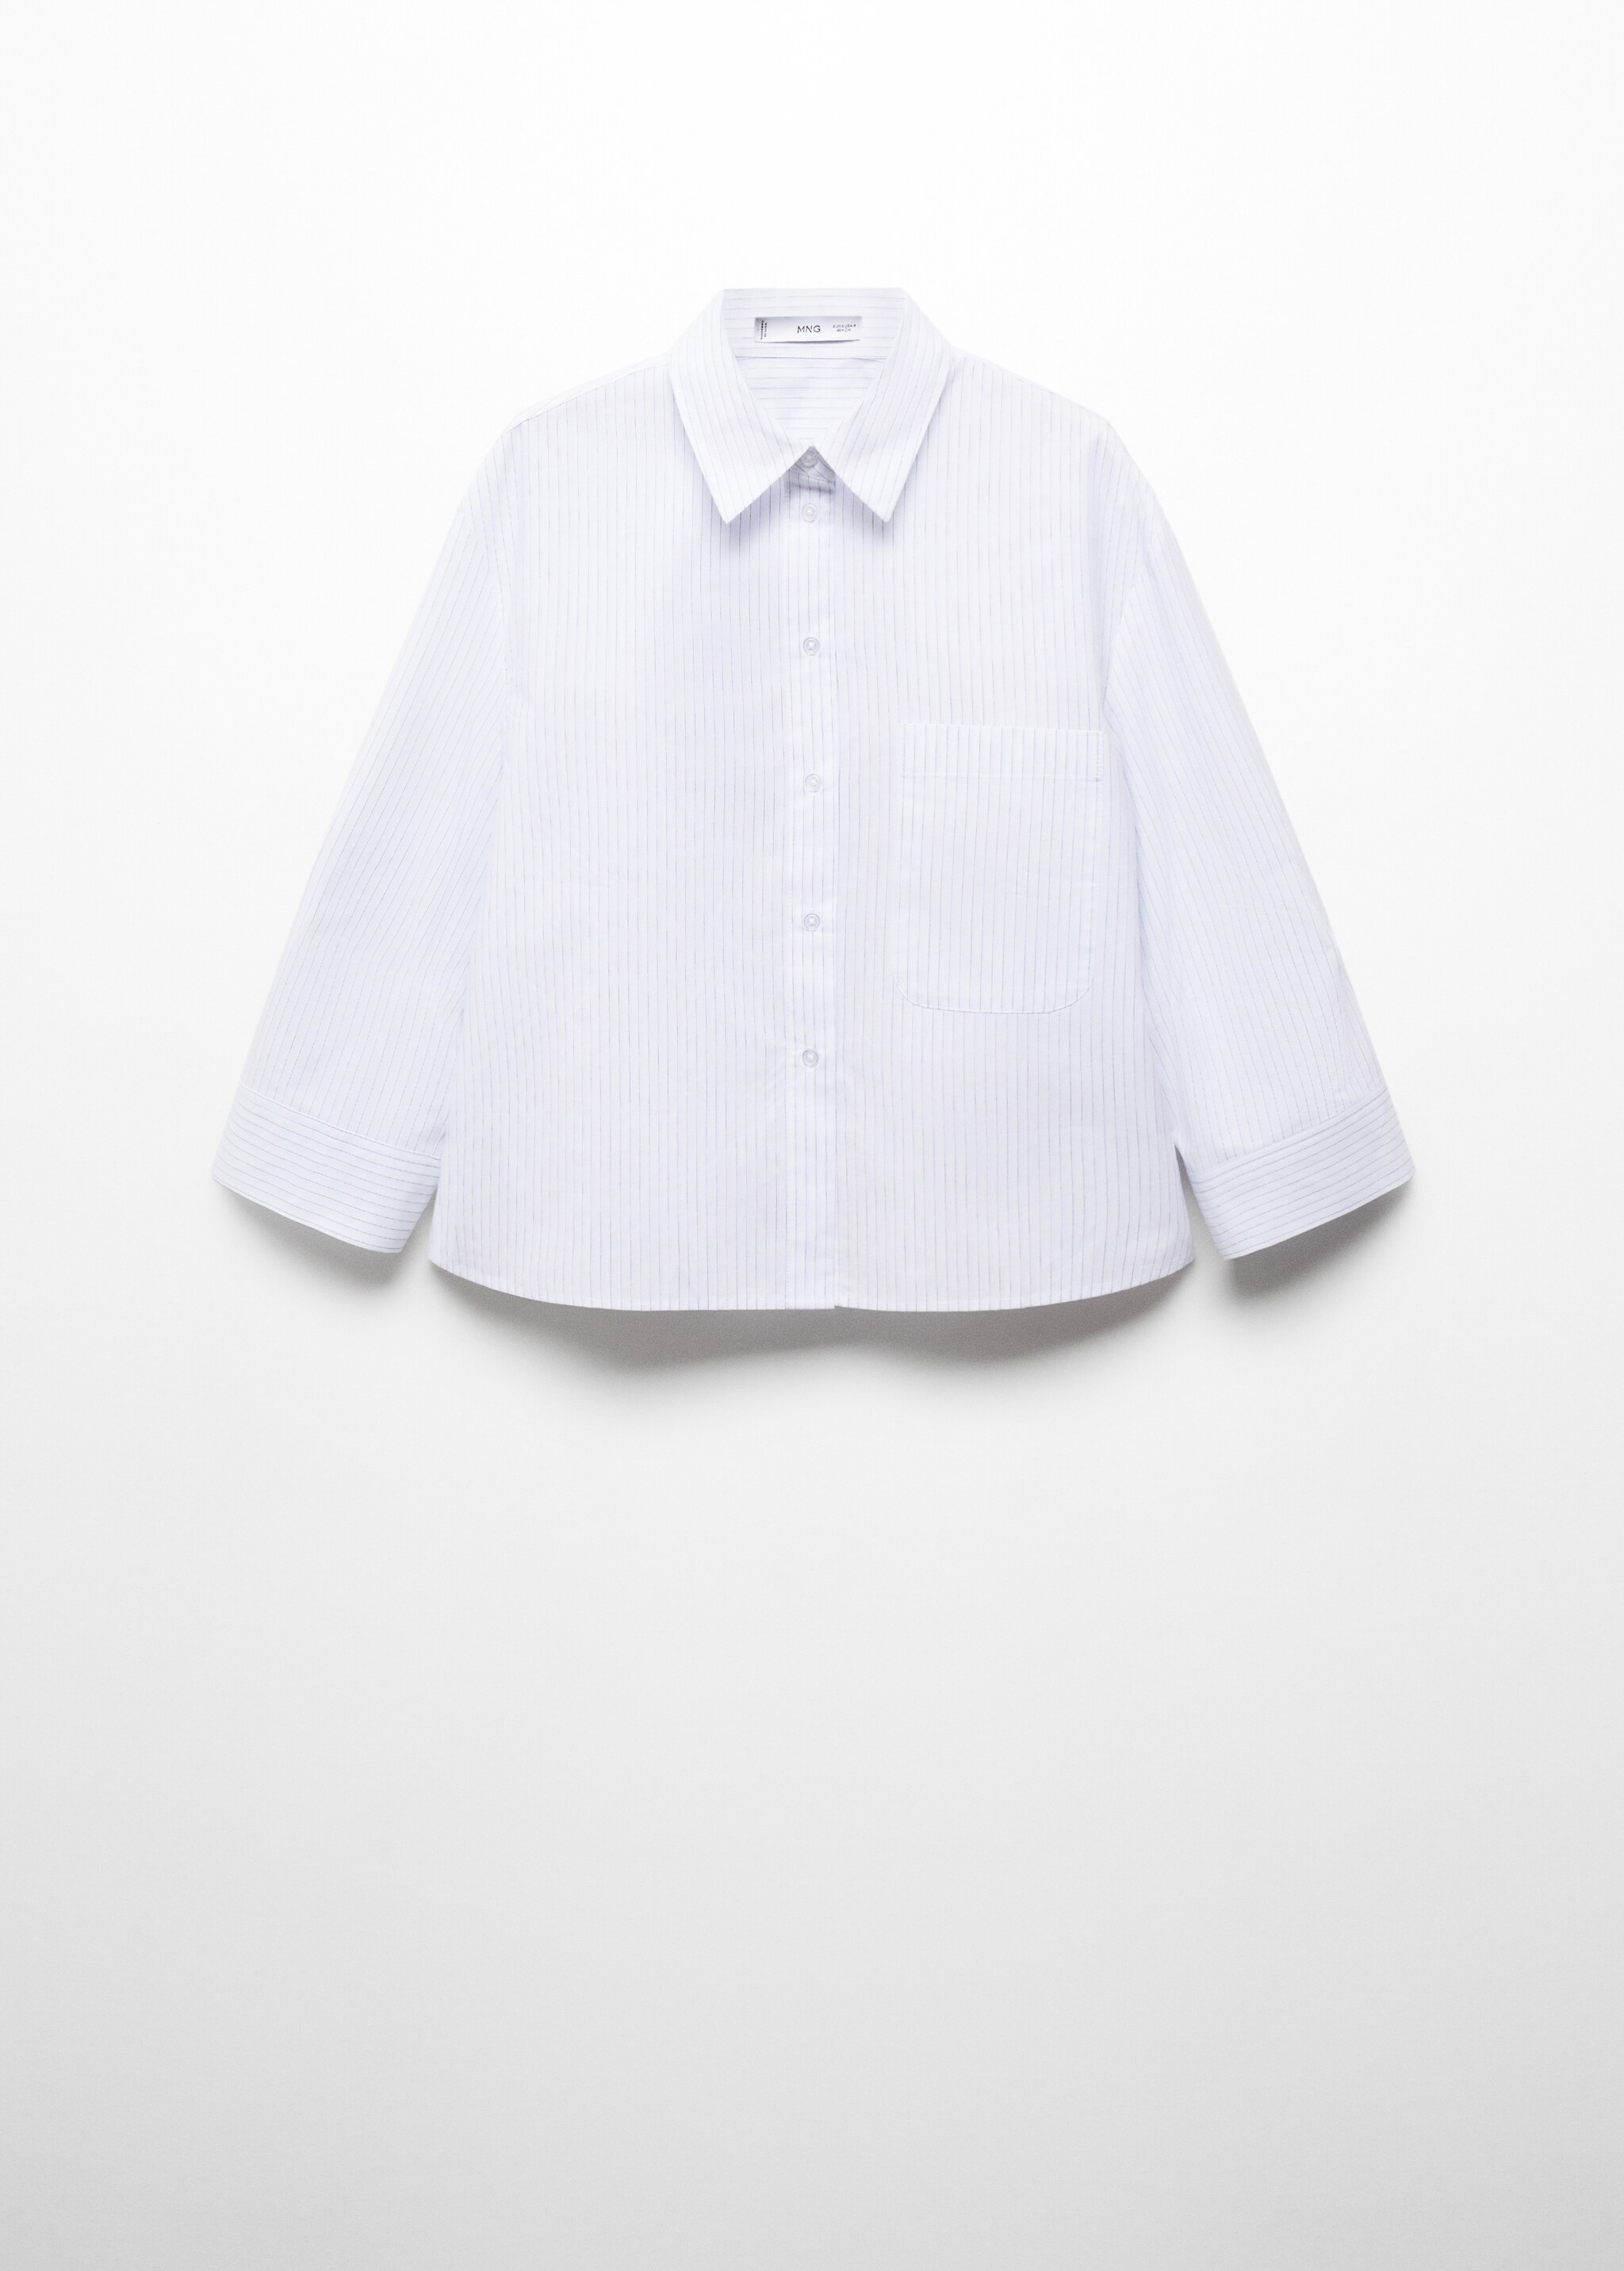 Camisa 100% algodón rayas - Artículo sin modelo